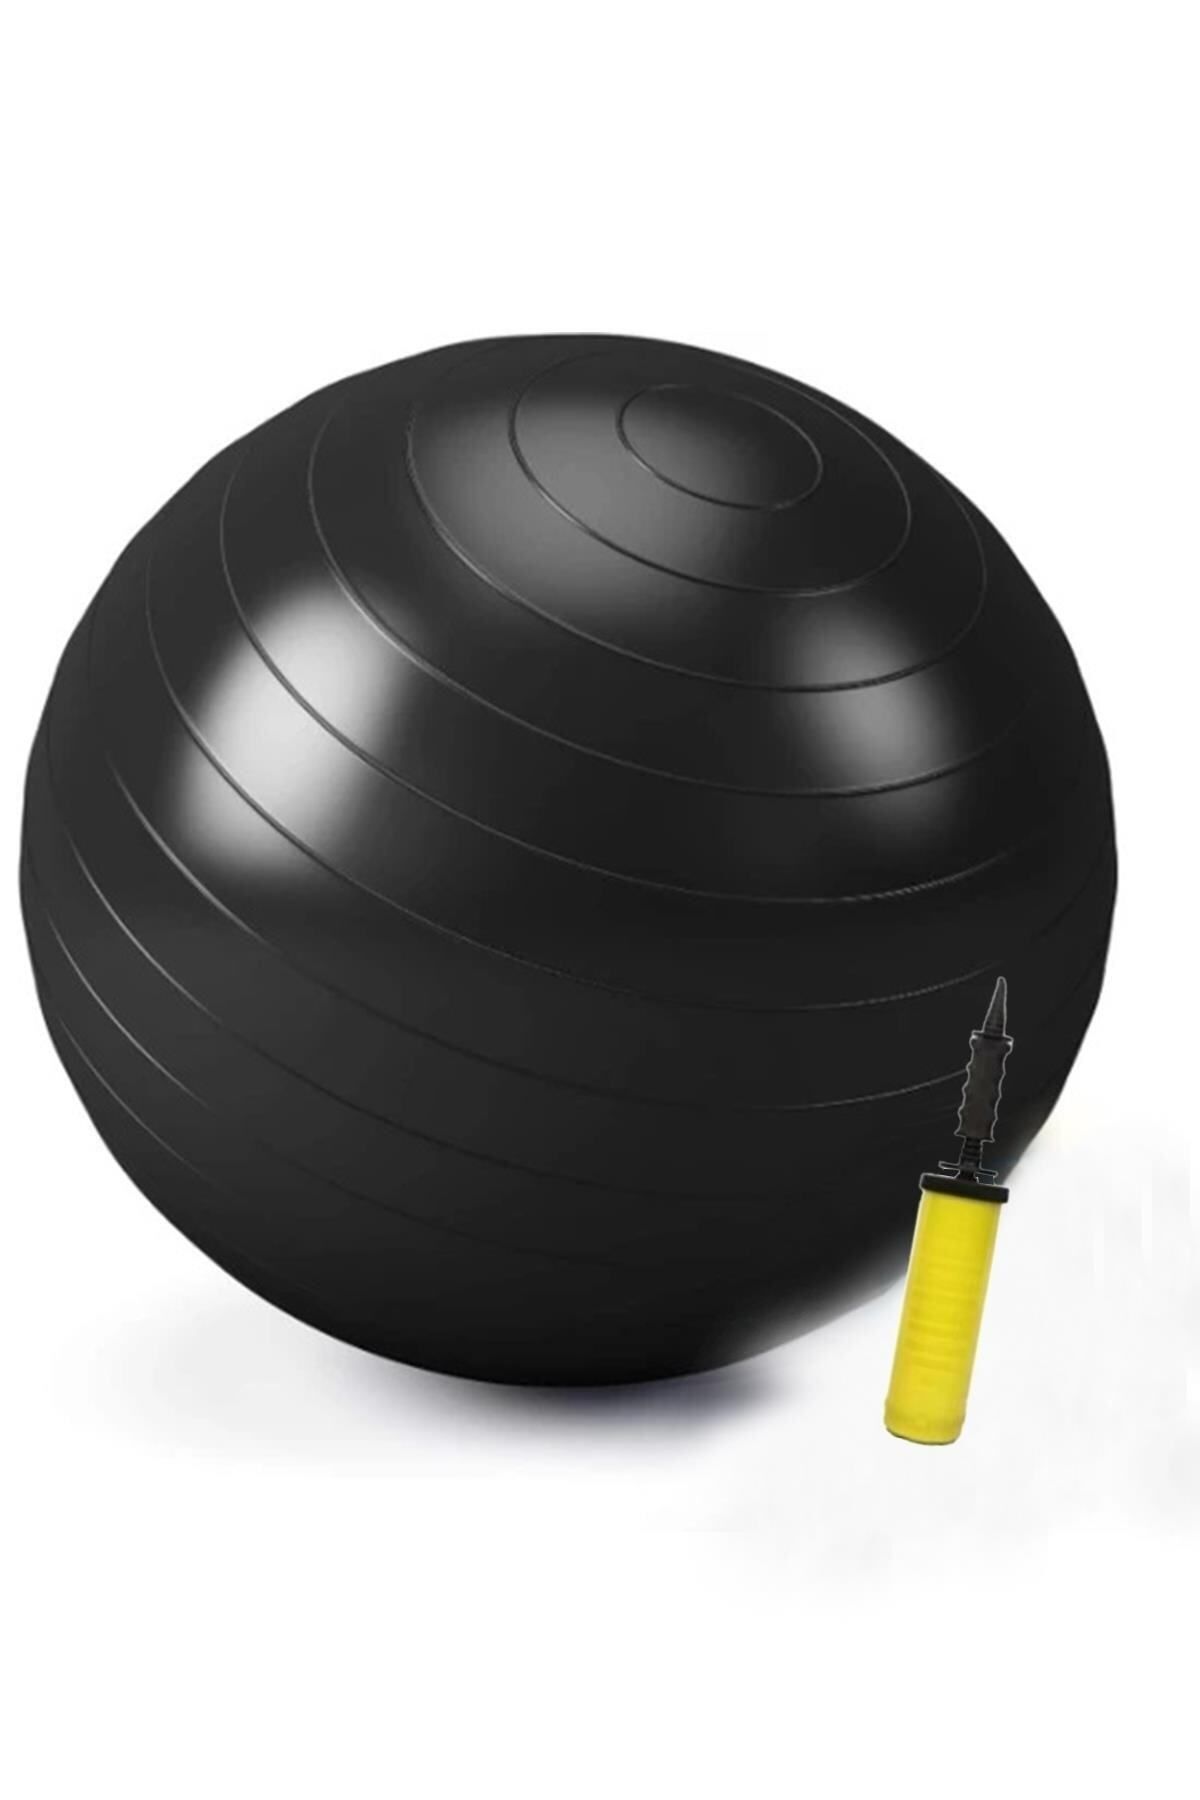 teknotrust 65 cm Dayanıklı Yüksek Kalite Şeffaf Fitilli Pilates Topu Ve Pompa Seti Denge,Aerobik,Yoga,Fitness